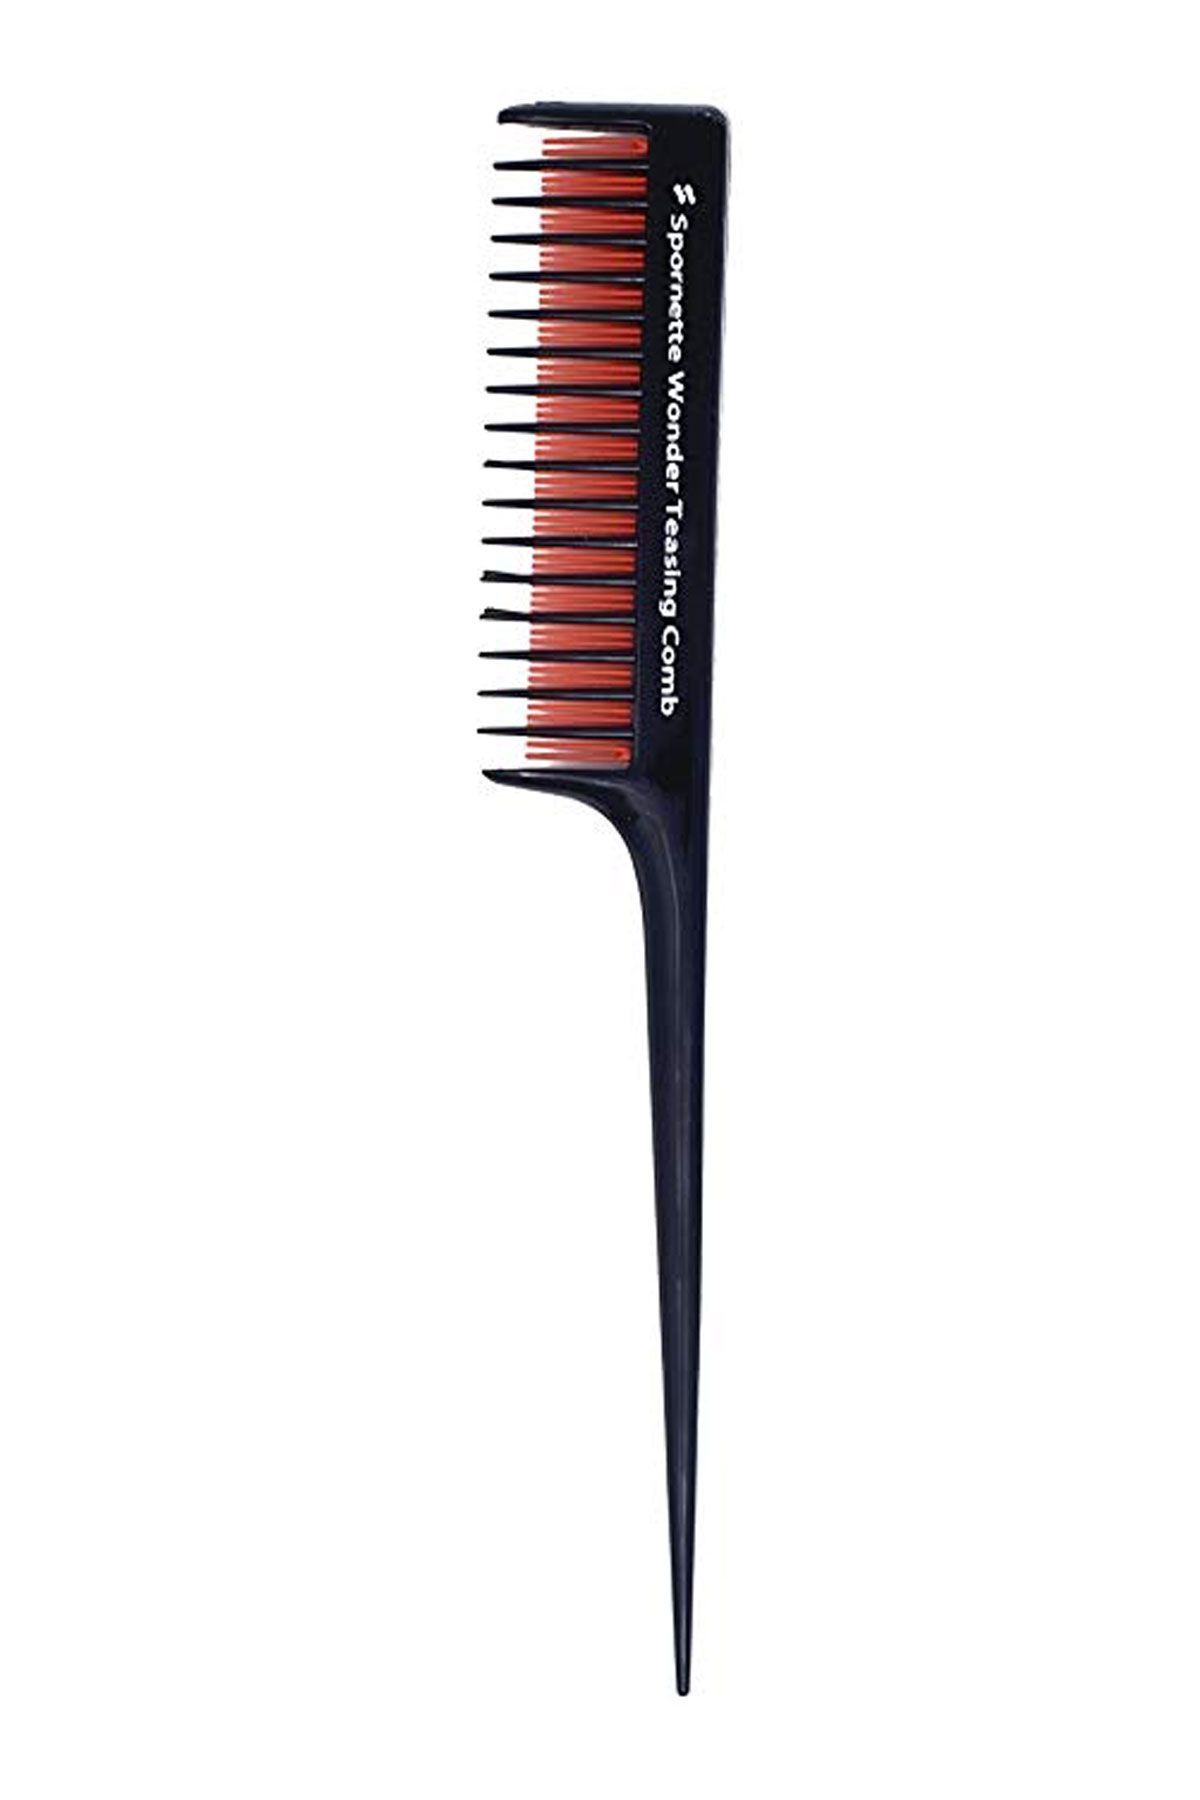 bit comb